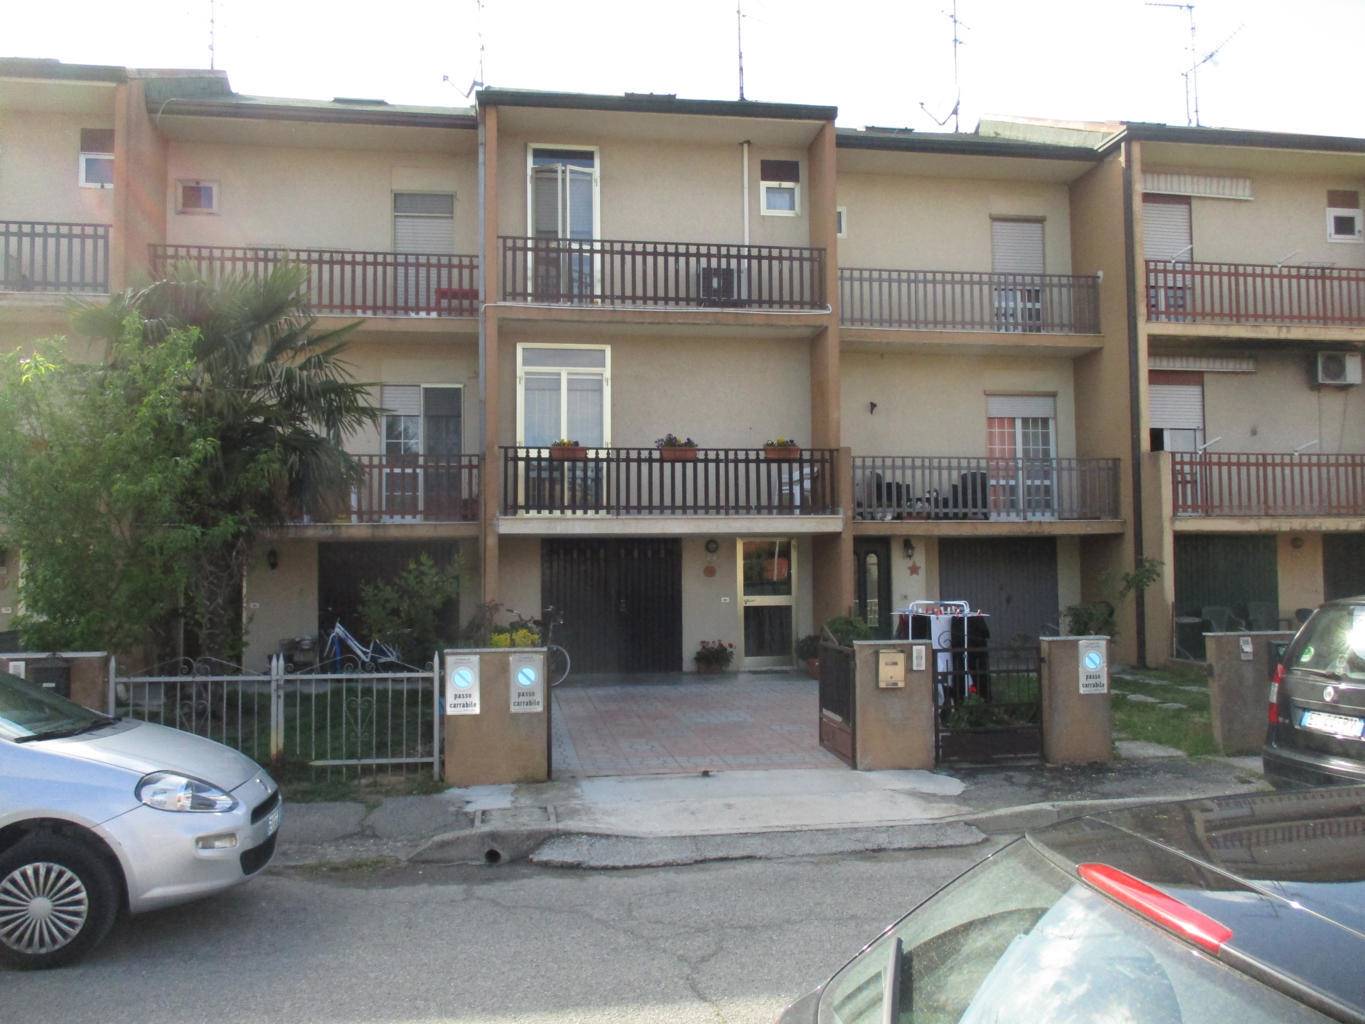 Villa a Schiera in vendita a Ostellato, 5 locali, prezzo € 80.000 | PortaleAgenzieImmobiliari.it